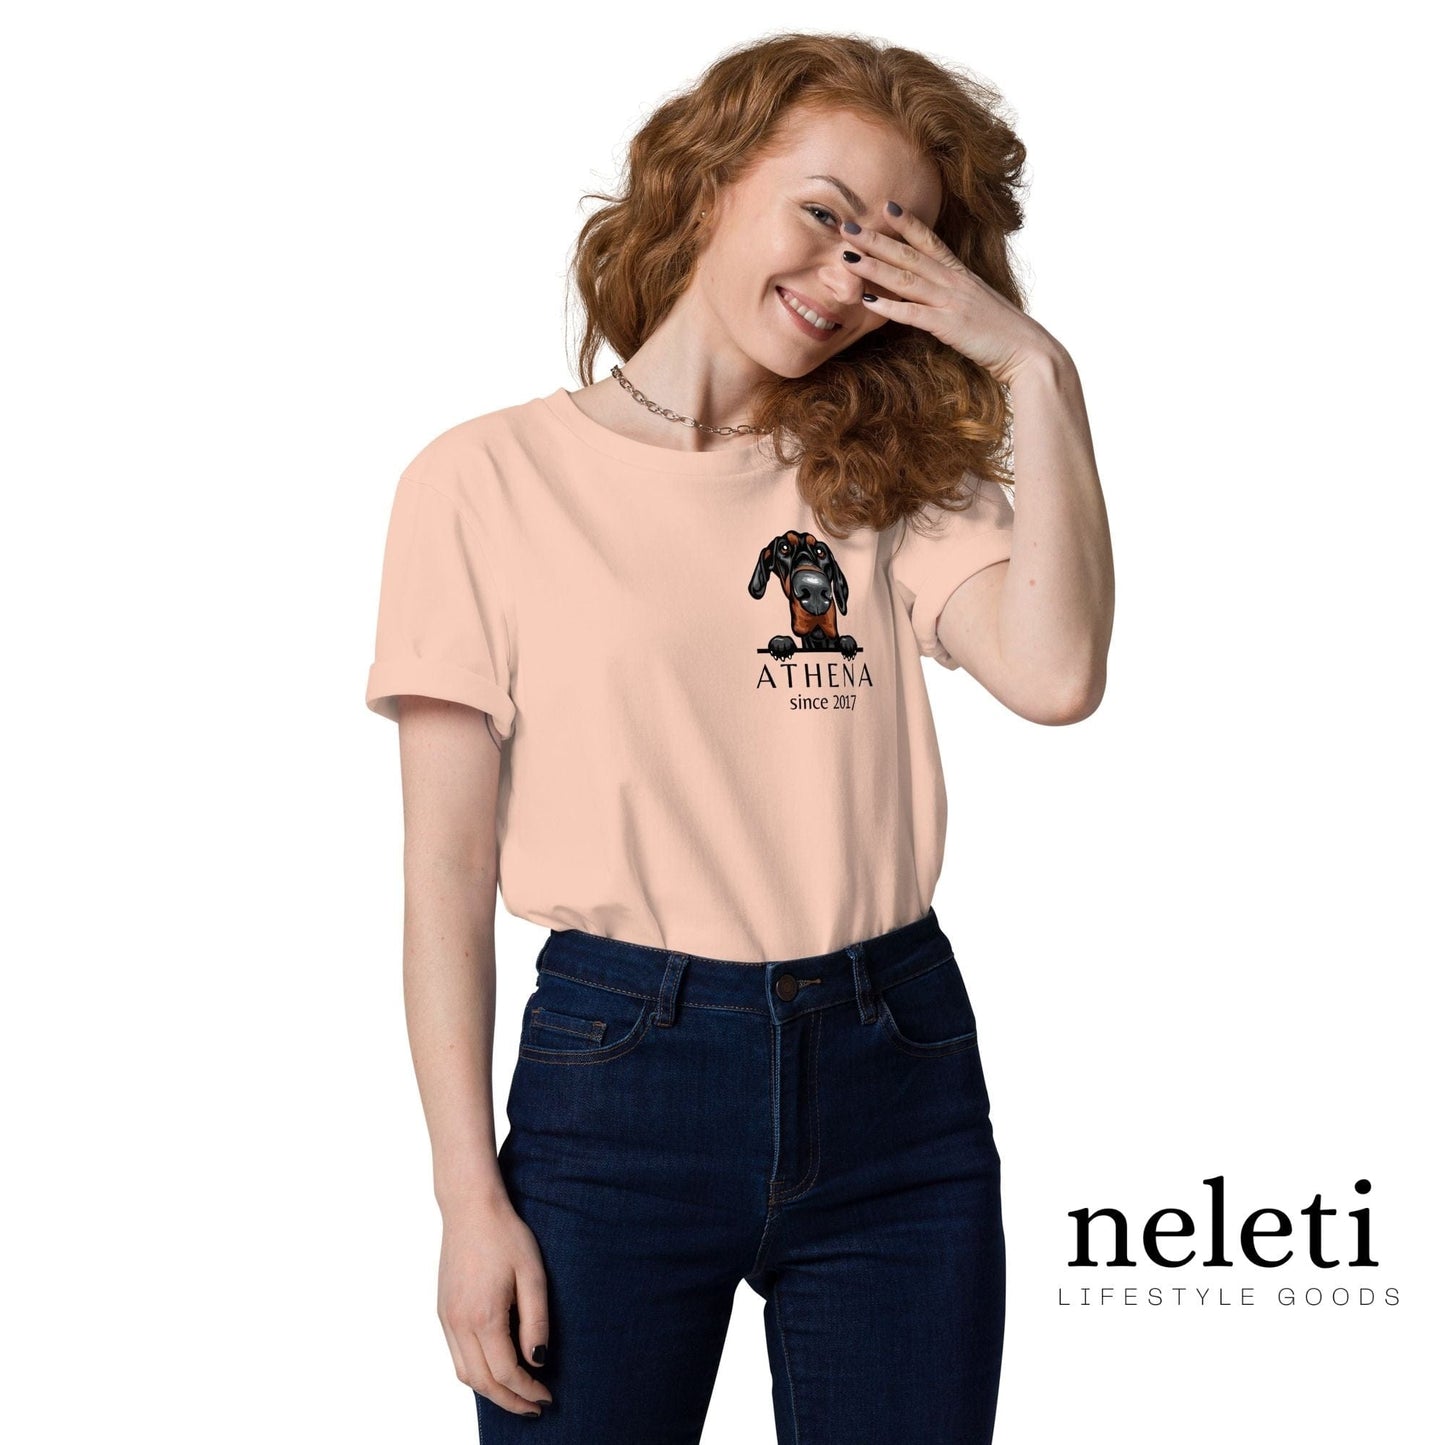 neleti.com-custom-fraiche-peche-shirt-for-dog-mom